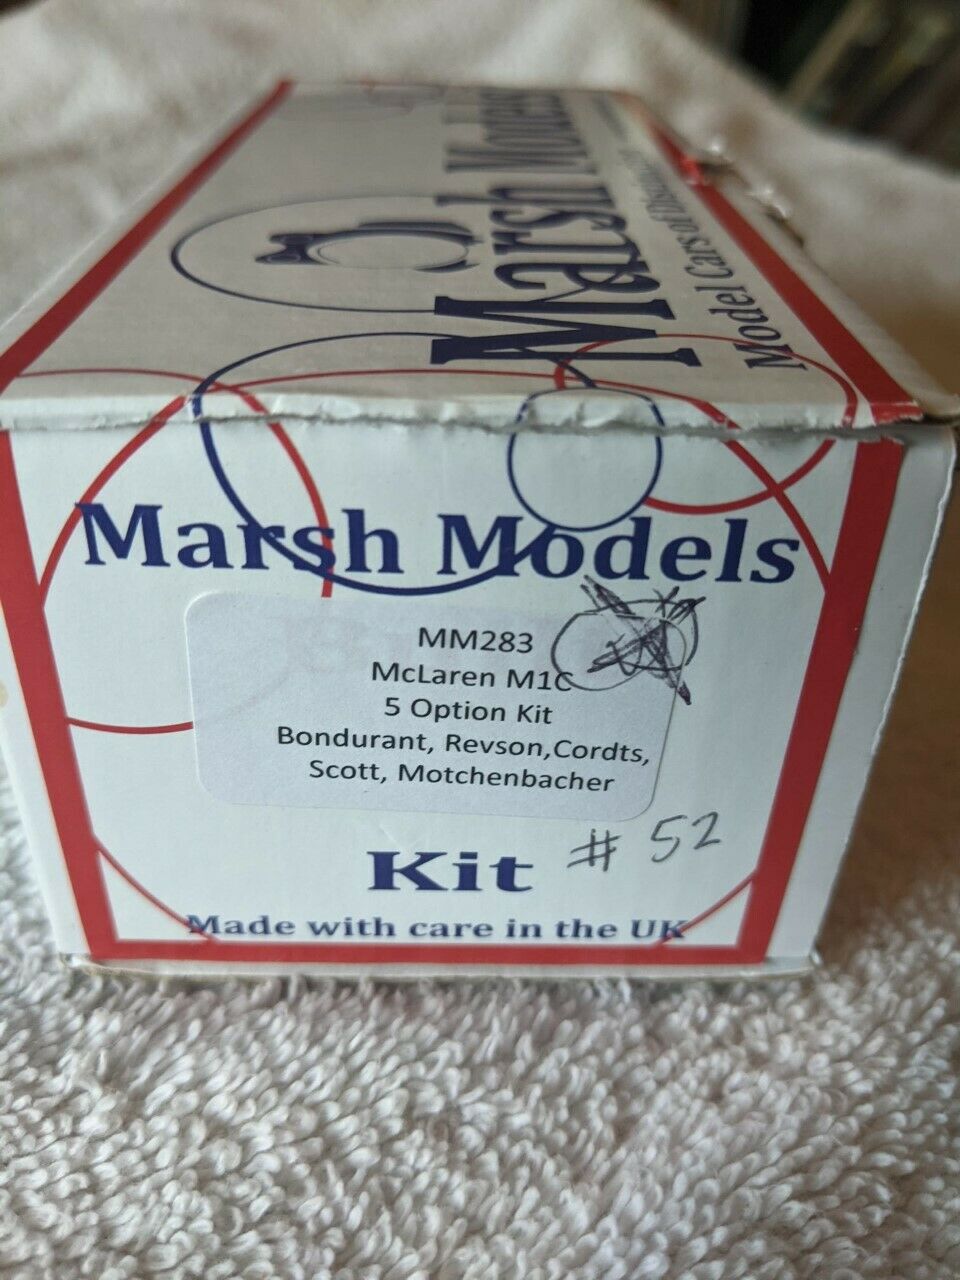 1/43 Marsh Models Mclaren M1c Kit 52 5 Options